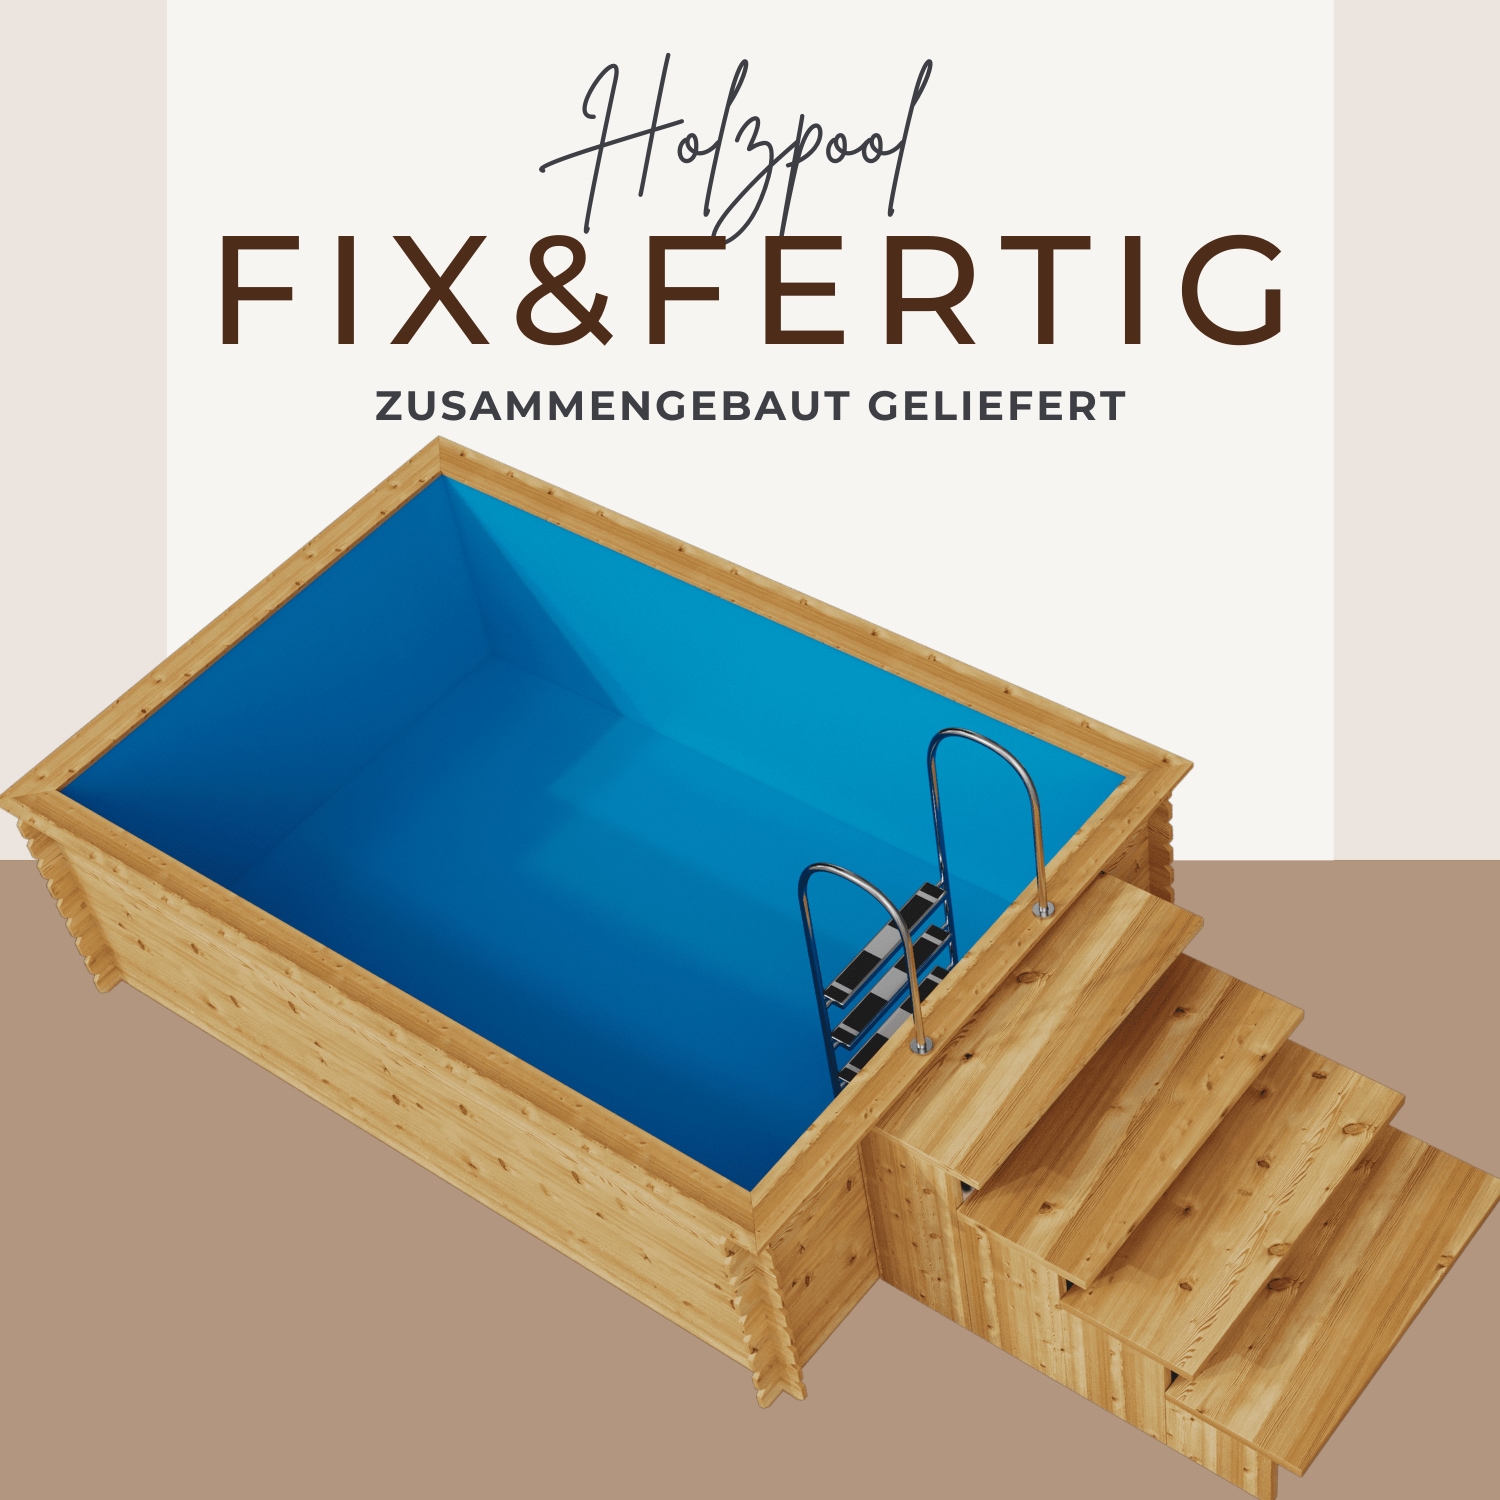 EDEN Holzmanufaktur Rechteckpool »Fix&Fertig Fichtenholz«, (Set, 4 tlg.), inkl. blauem Einsatz, Dämmung, Einstiegstreppe & -Leiter, Wasserablauf